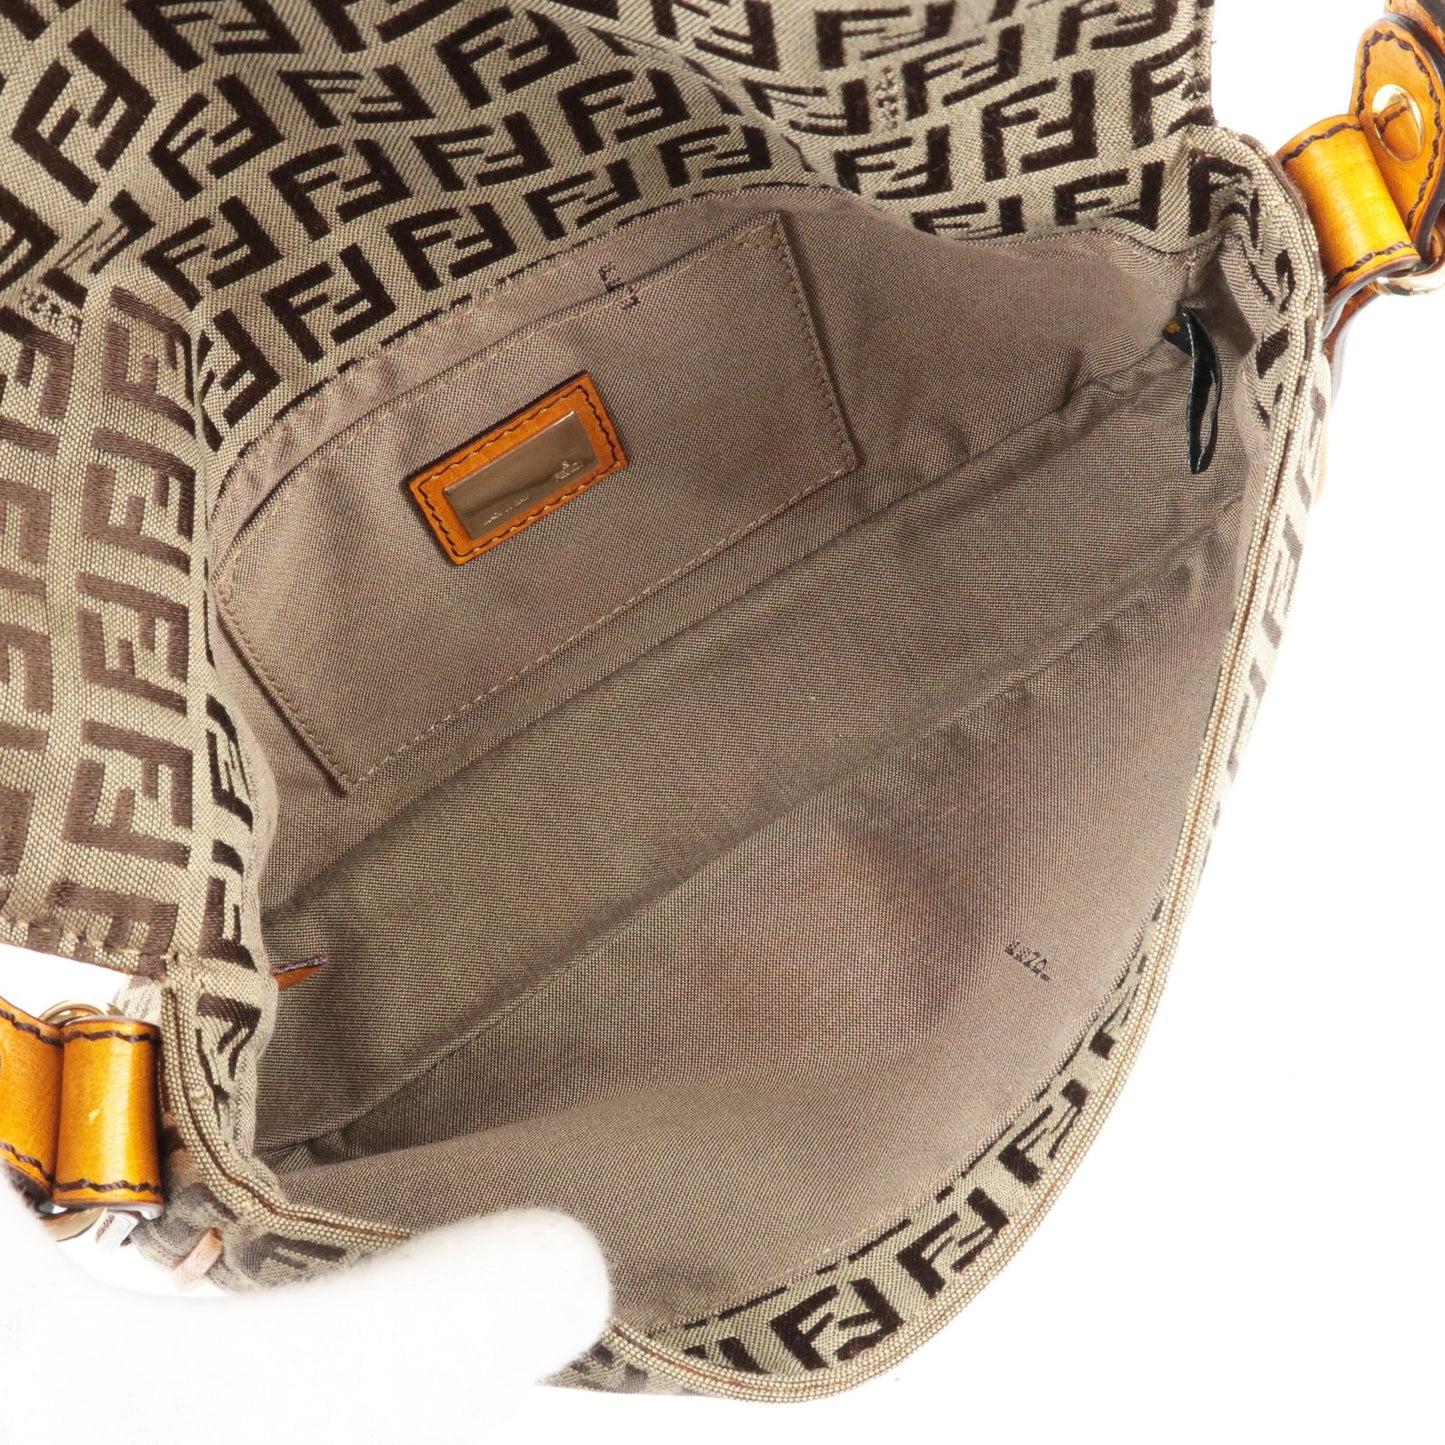 FENDI Zucchino Canvas Leather Shoulder Bag Beige Brown 8BT101